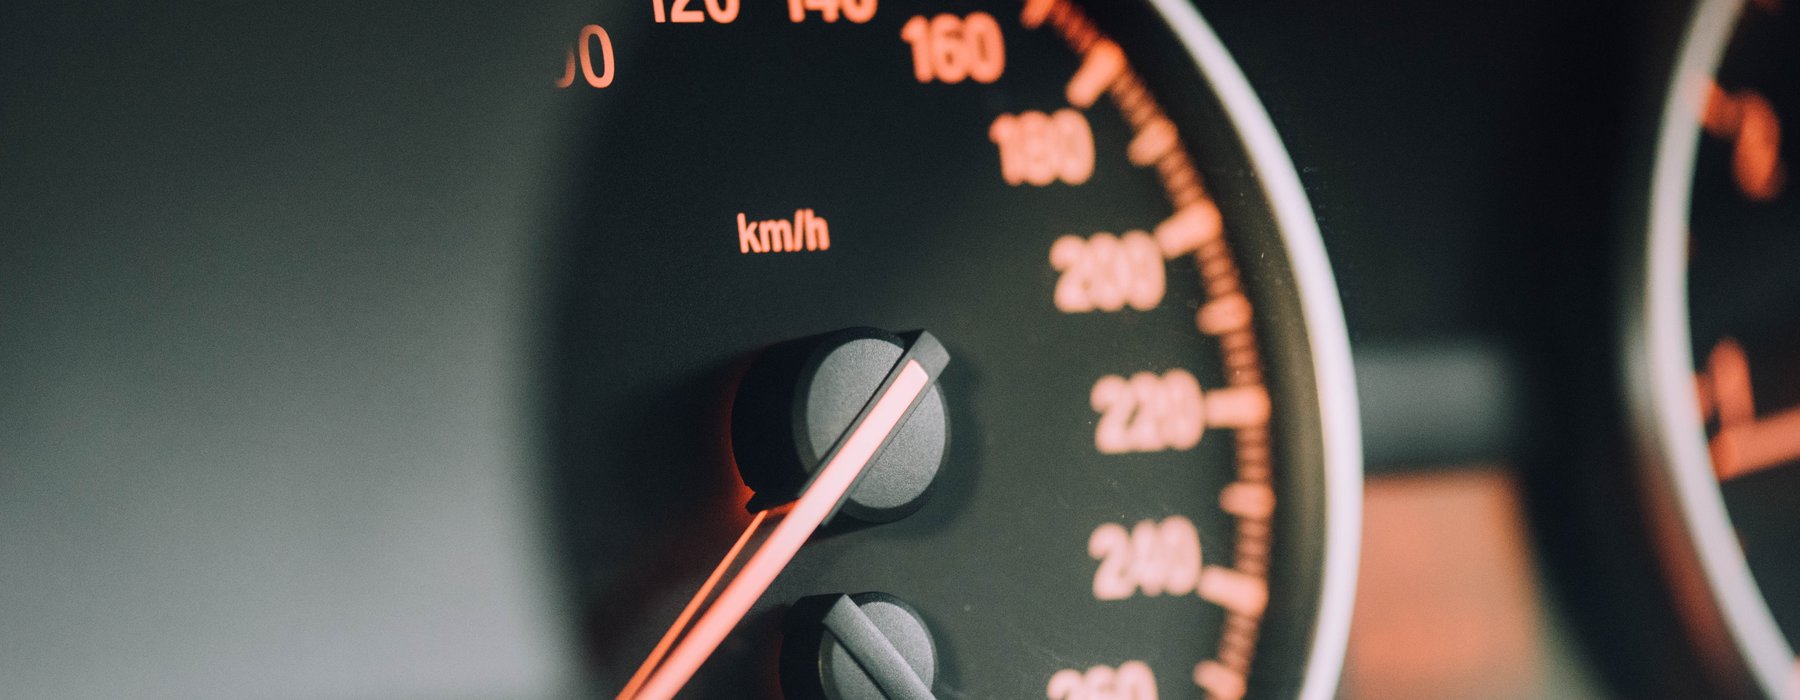 Bij 30 kilometer te snel rijbewijs kwijt?